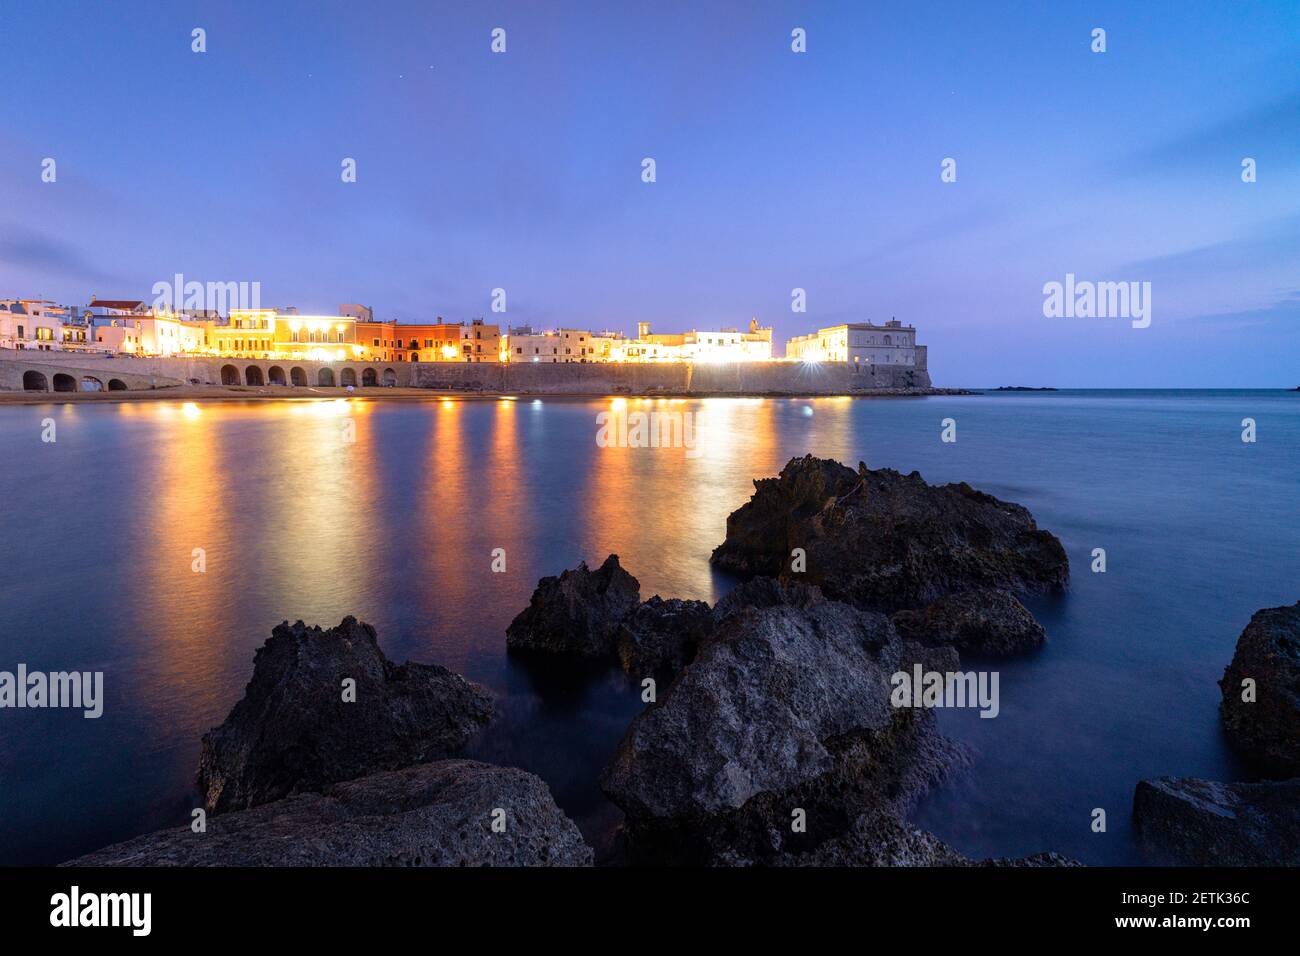 Edificios iluminados de Gallipoli reflejados en el mar azul al atardecer, provincia de Lecce, Salento, Apulia, Italia Foto de stock